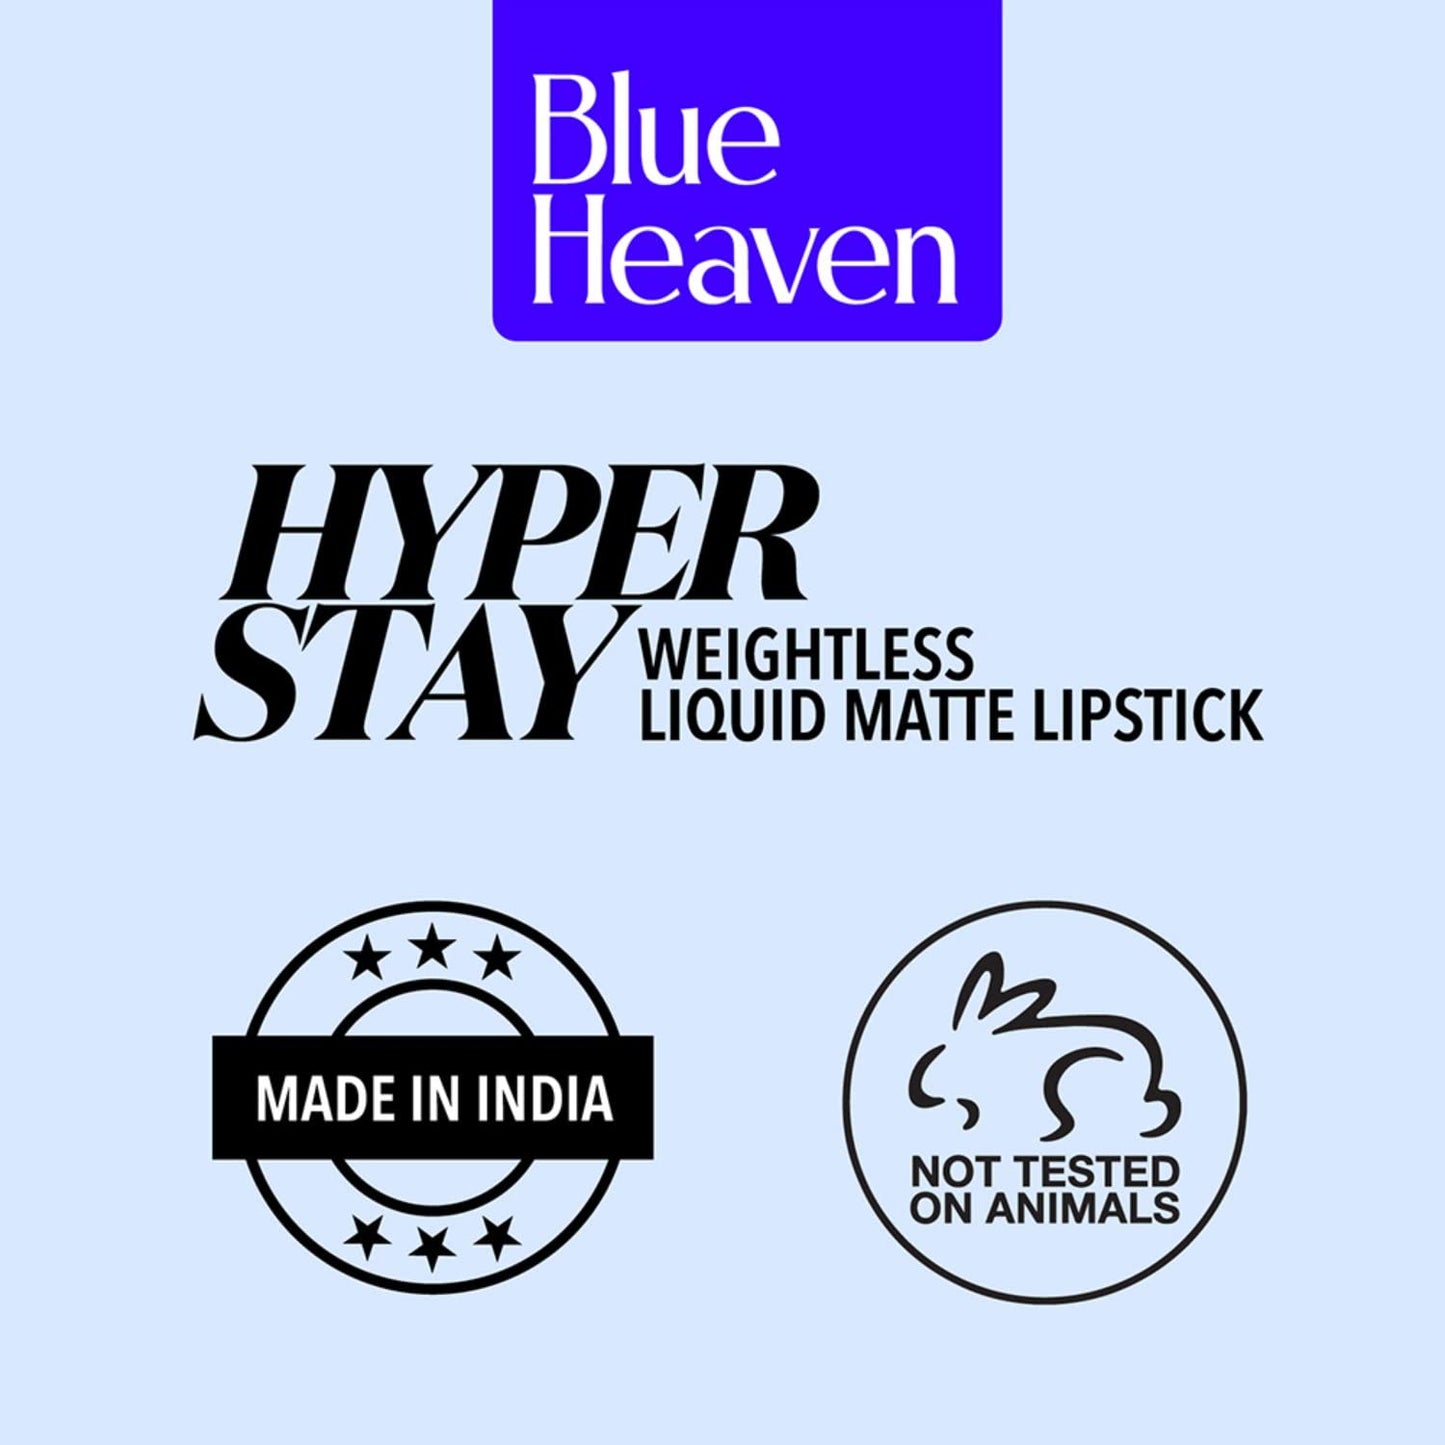 Blue Heaven Hyperstay Weightless Liquid Matte Lipstick, Smudgeproof, Transfer proof, Deep Cranberry, 6ml